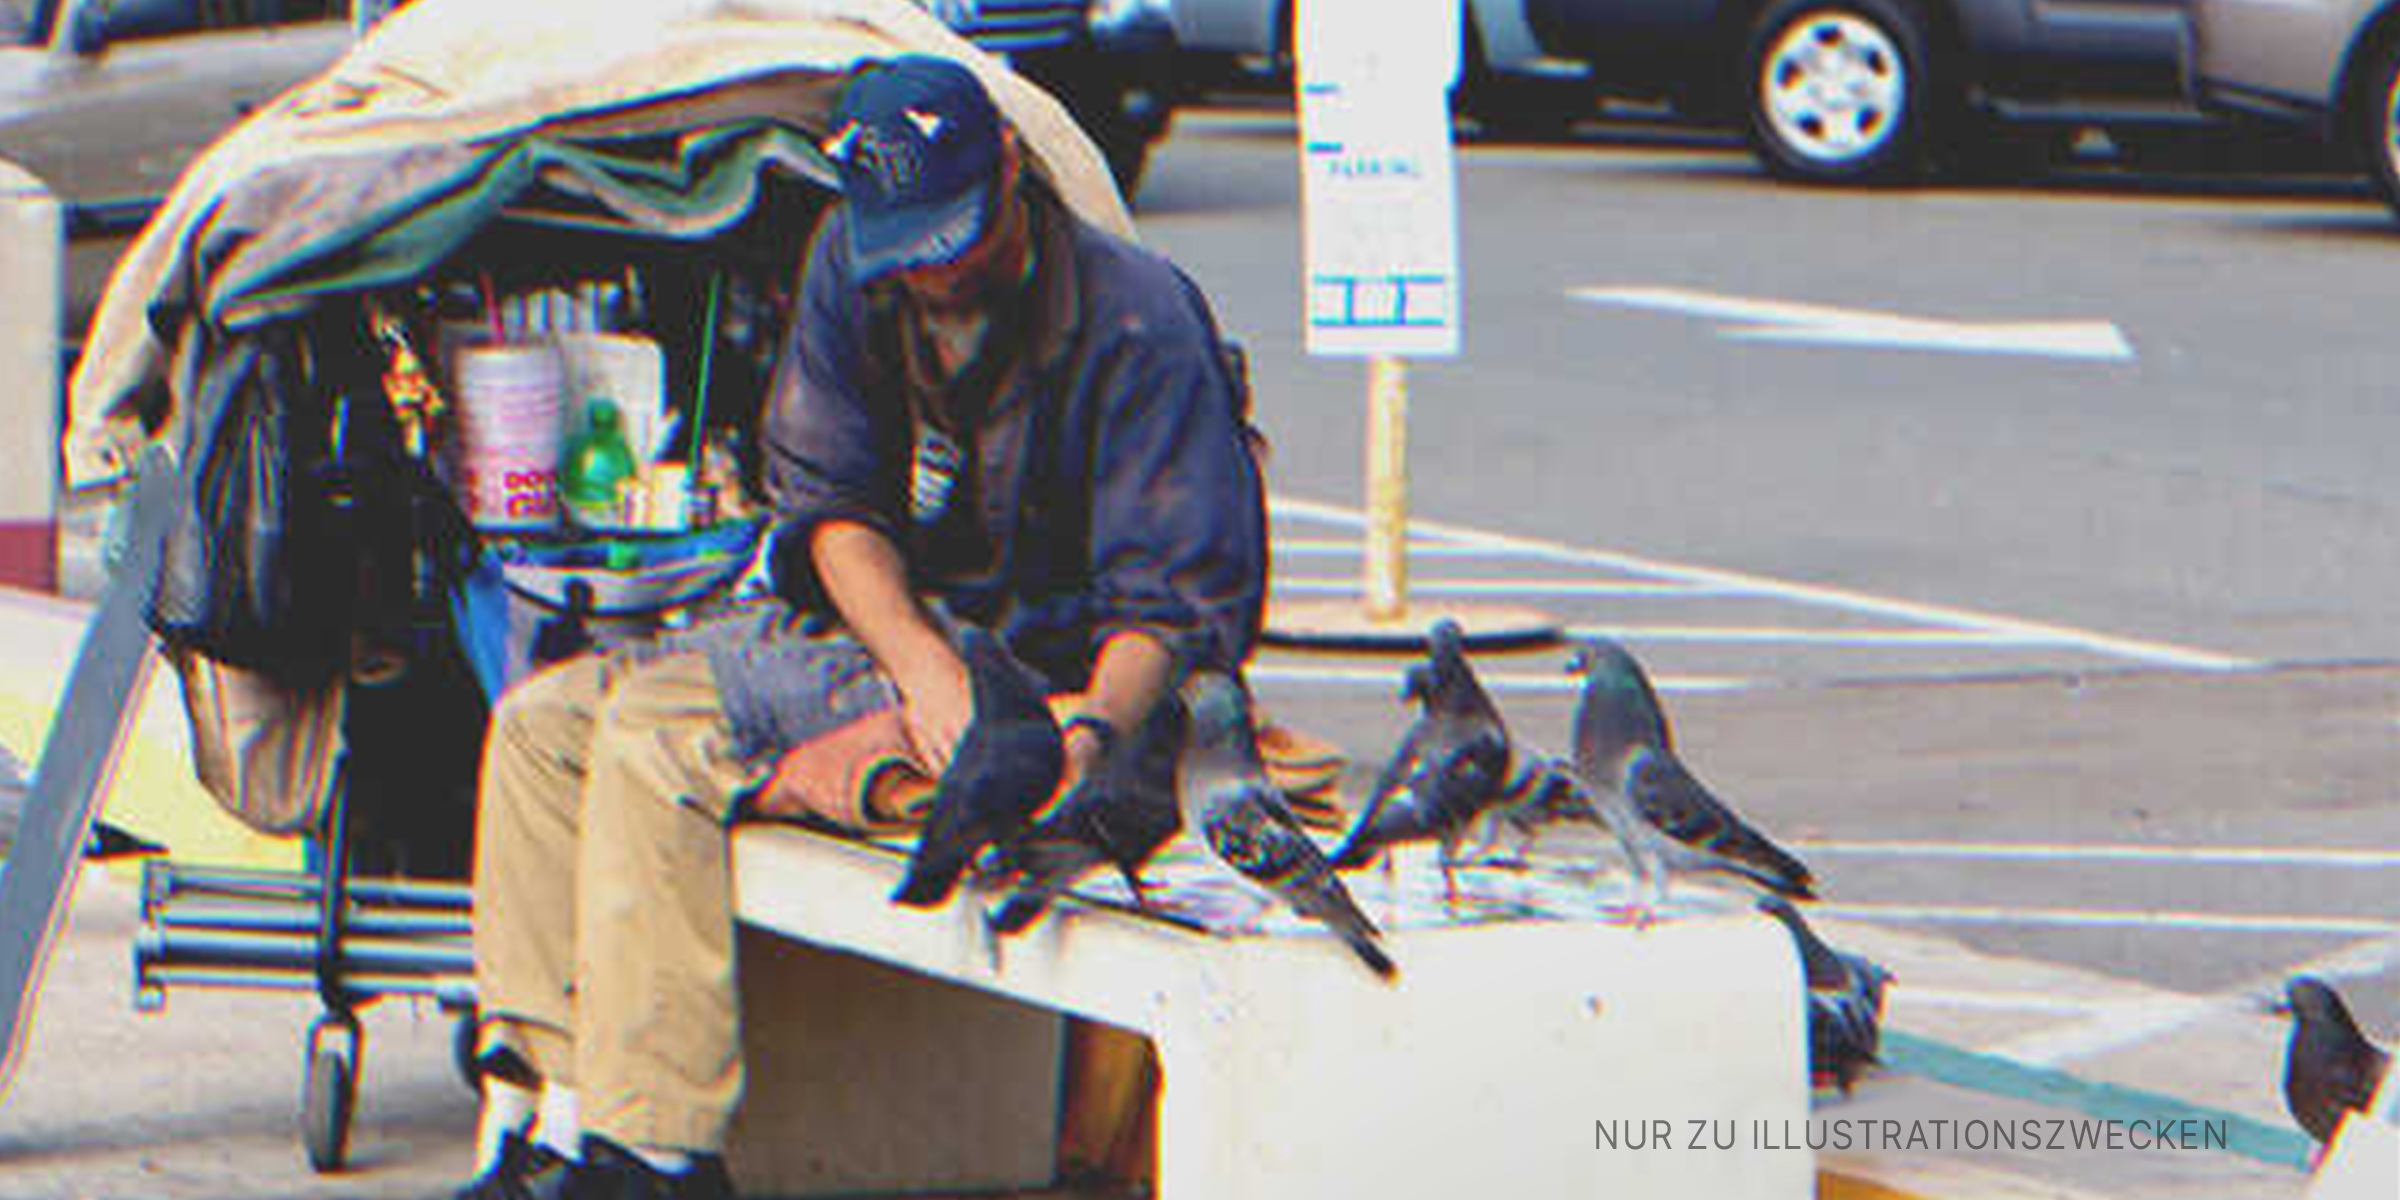 Ein obdachloser Mann sitzt auf einer Bank. | Quelle: Shutterstock